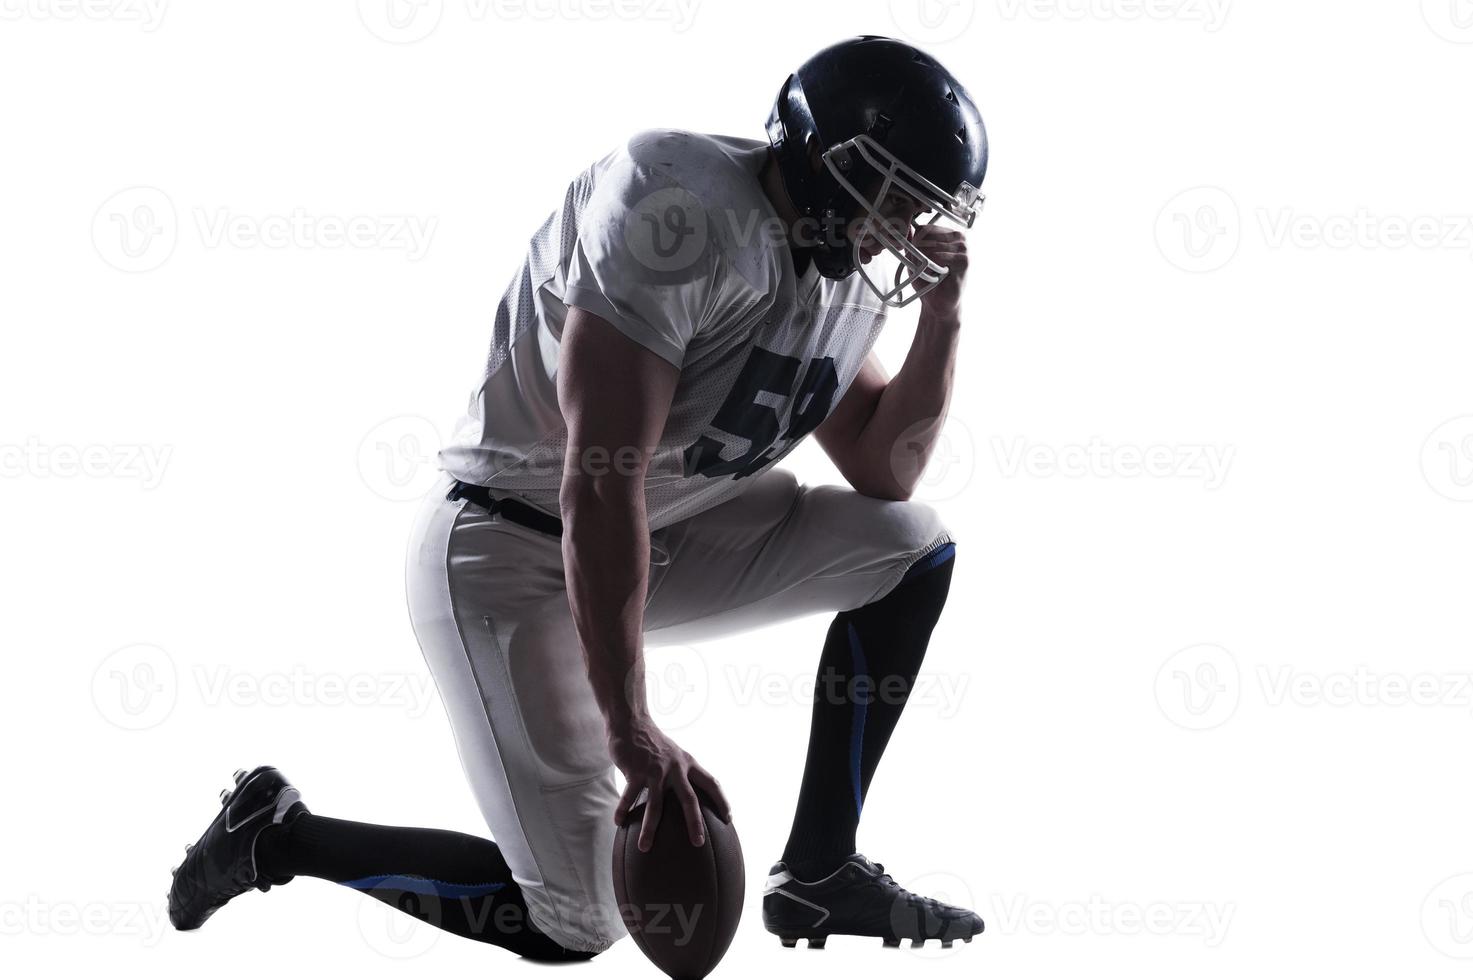 voorbereidingen treffen naar groot spel. kant visie van Amerikaans Amerikaans voetbal speler Holding hand- Aan helm terwijl staand Aan knie tegen wit achtergrond foto